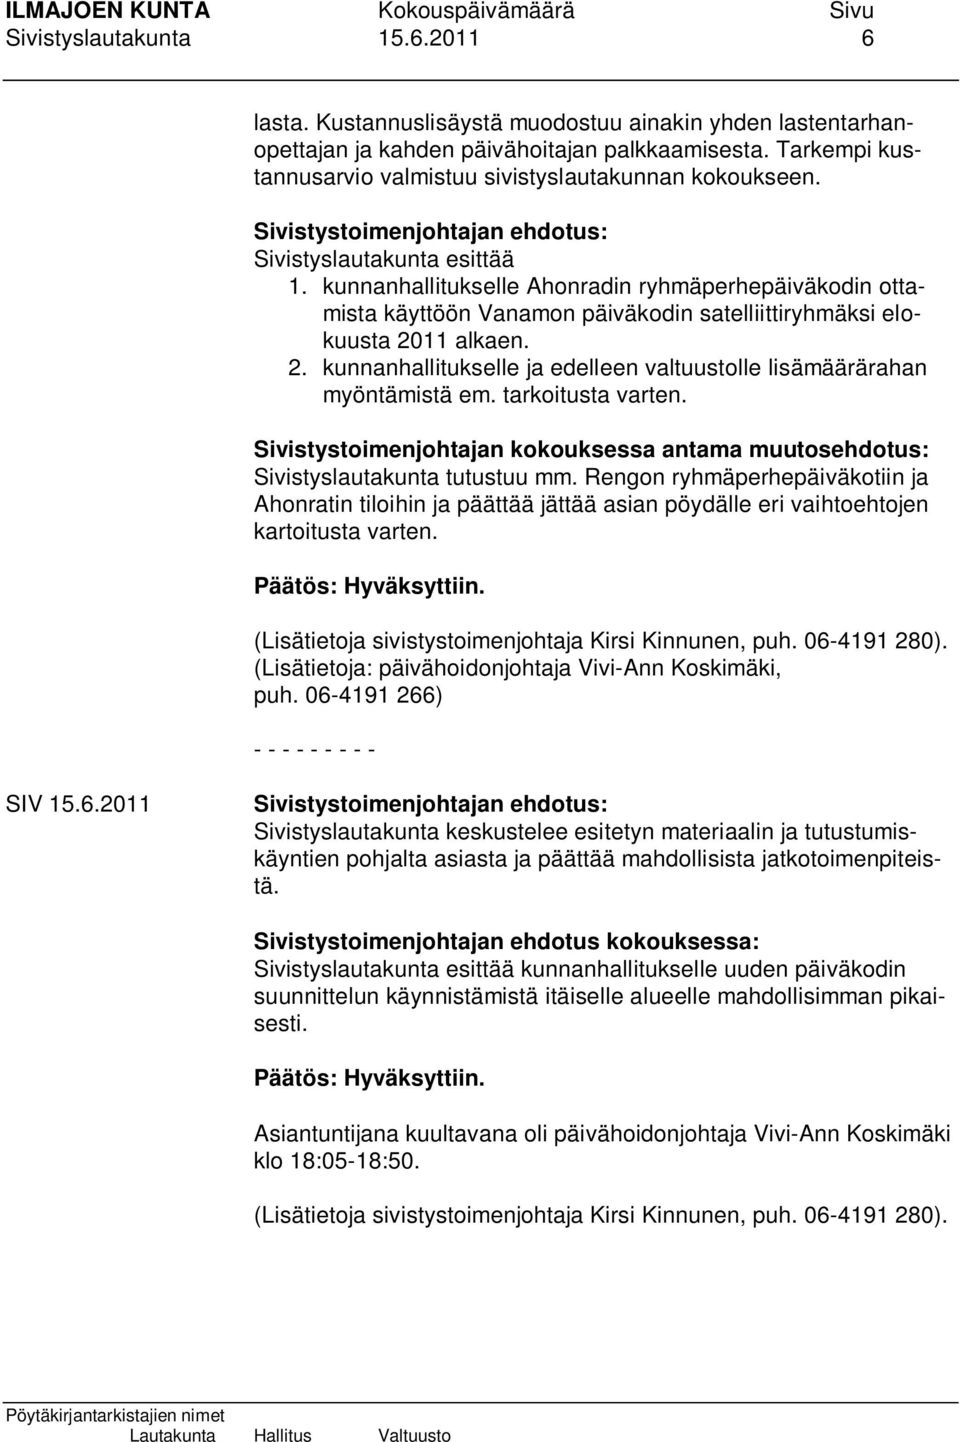 kunnanhallitukselle Ahonradin ryhmäperhepäiväkodin ottamista käyttöön Vanamon päiväkodin satelliittiryhmäksi elokuusta 2011 alkaen. 2. kunnanhallitukselle ja edelleen valtuustolle lisämäärärahan myöntämistä em.